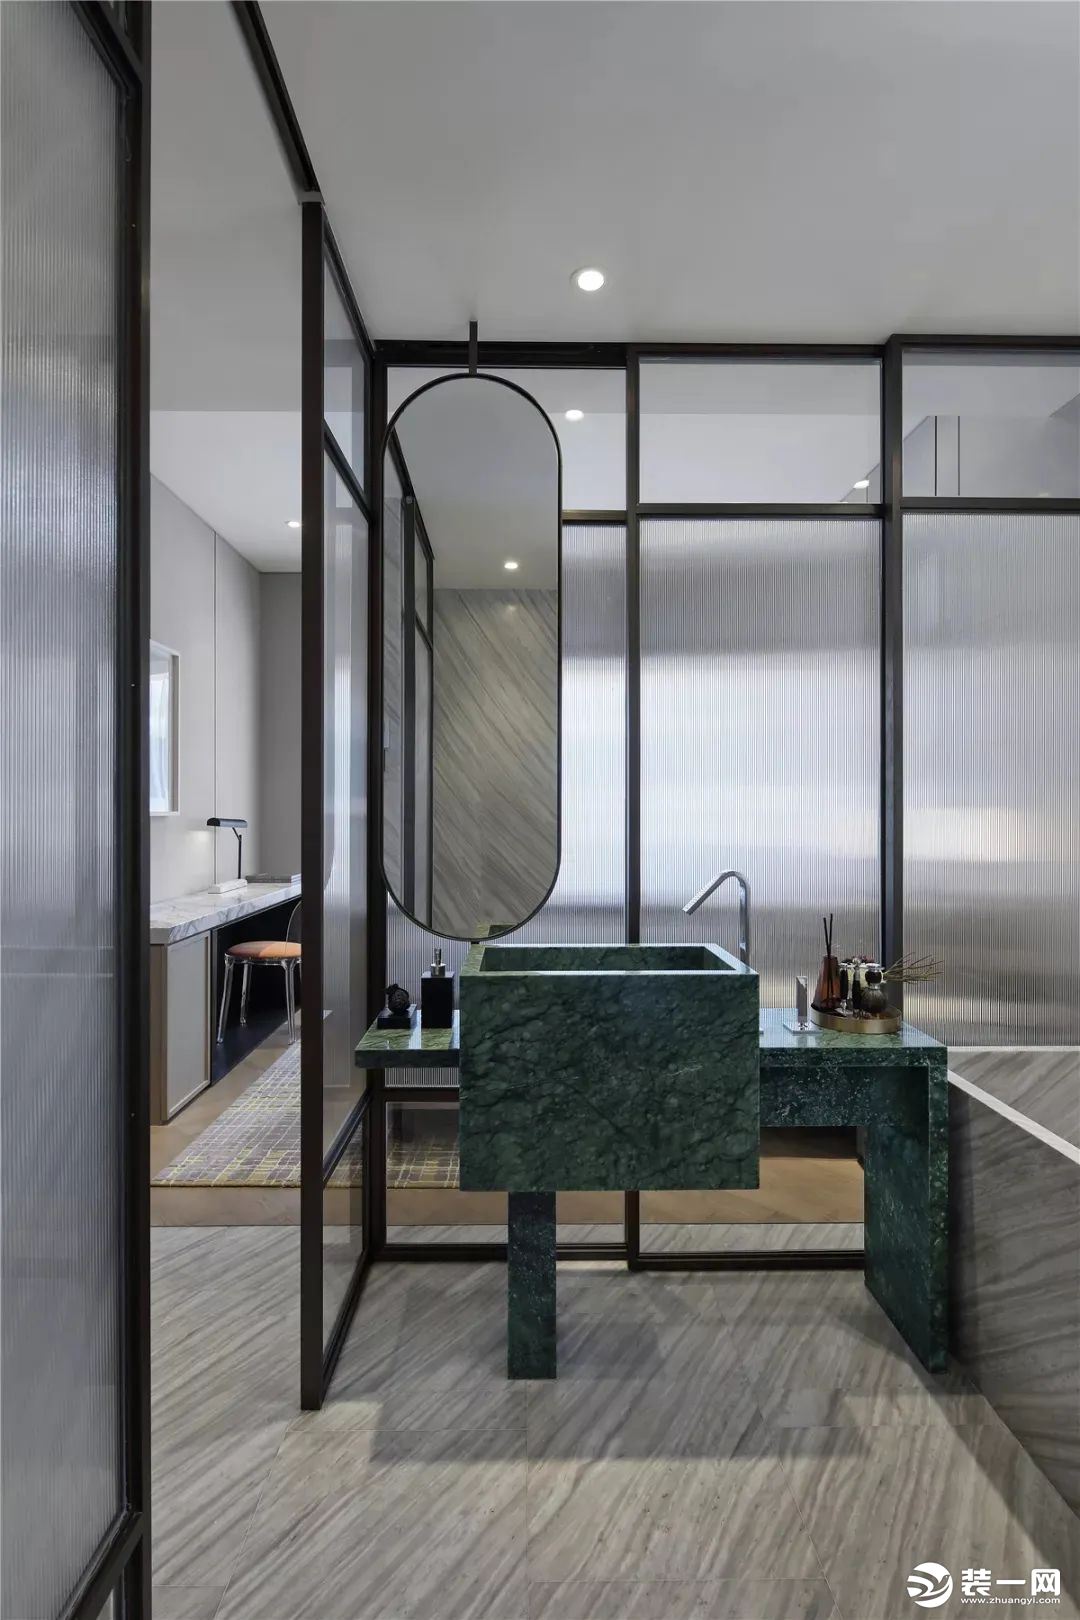 主人房的卫生间以长虹玻璃为隔断，装上绿色大理石质感的洗手台，提供了一个时尚优雅的卫浴空间。